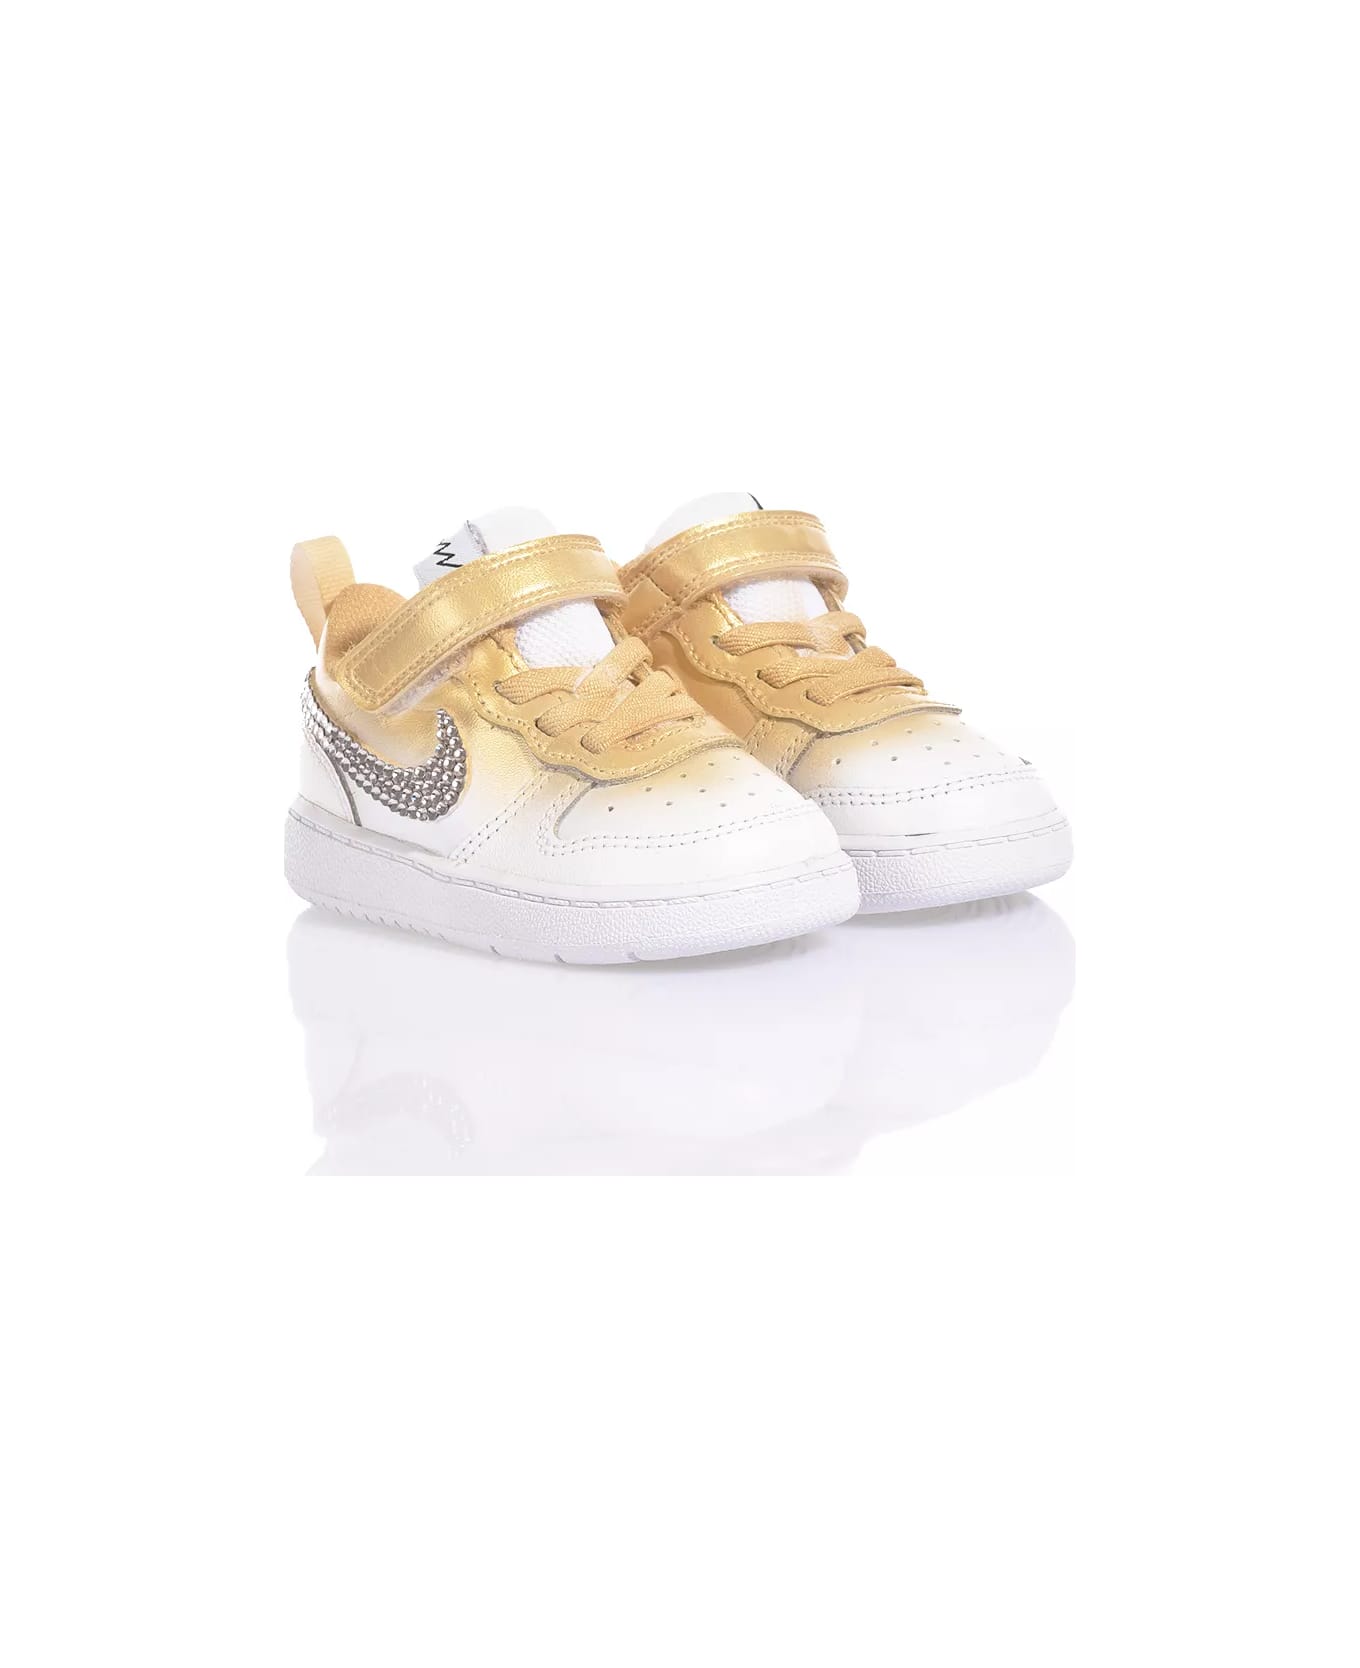 Mimanera Nike Baby Shade Gold Custom